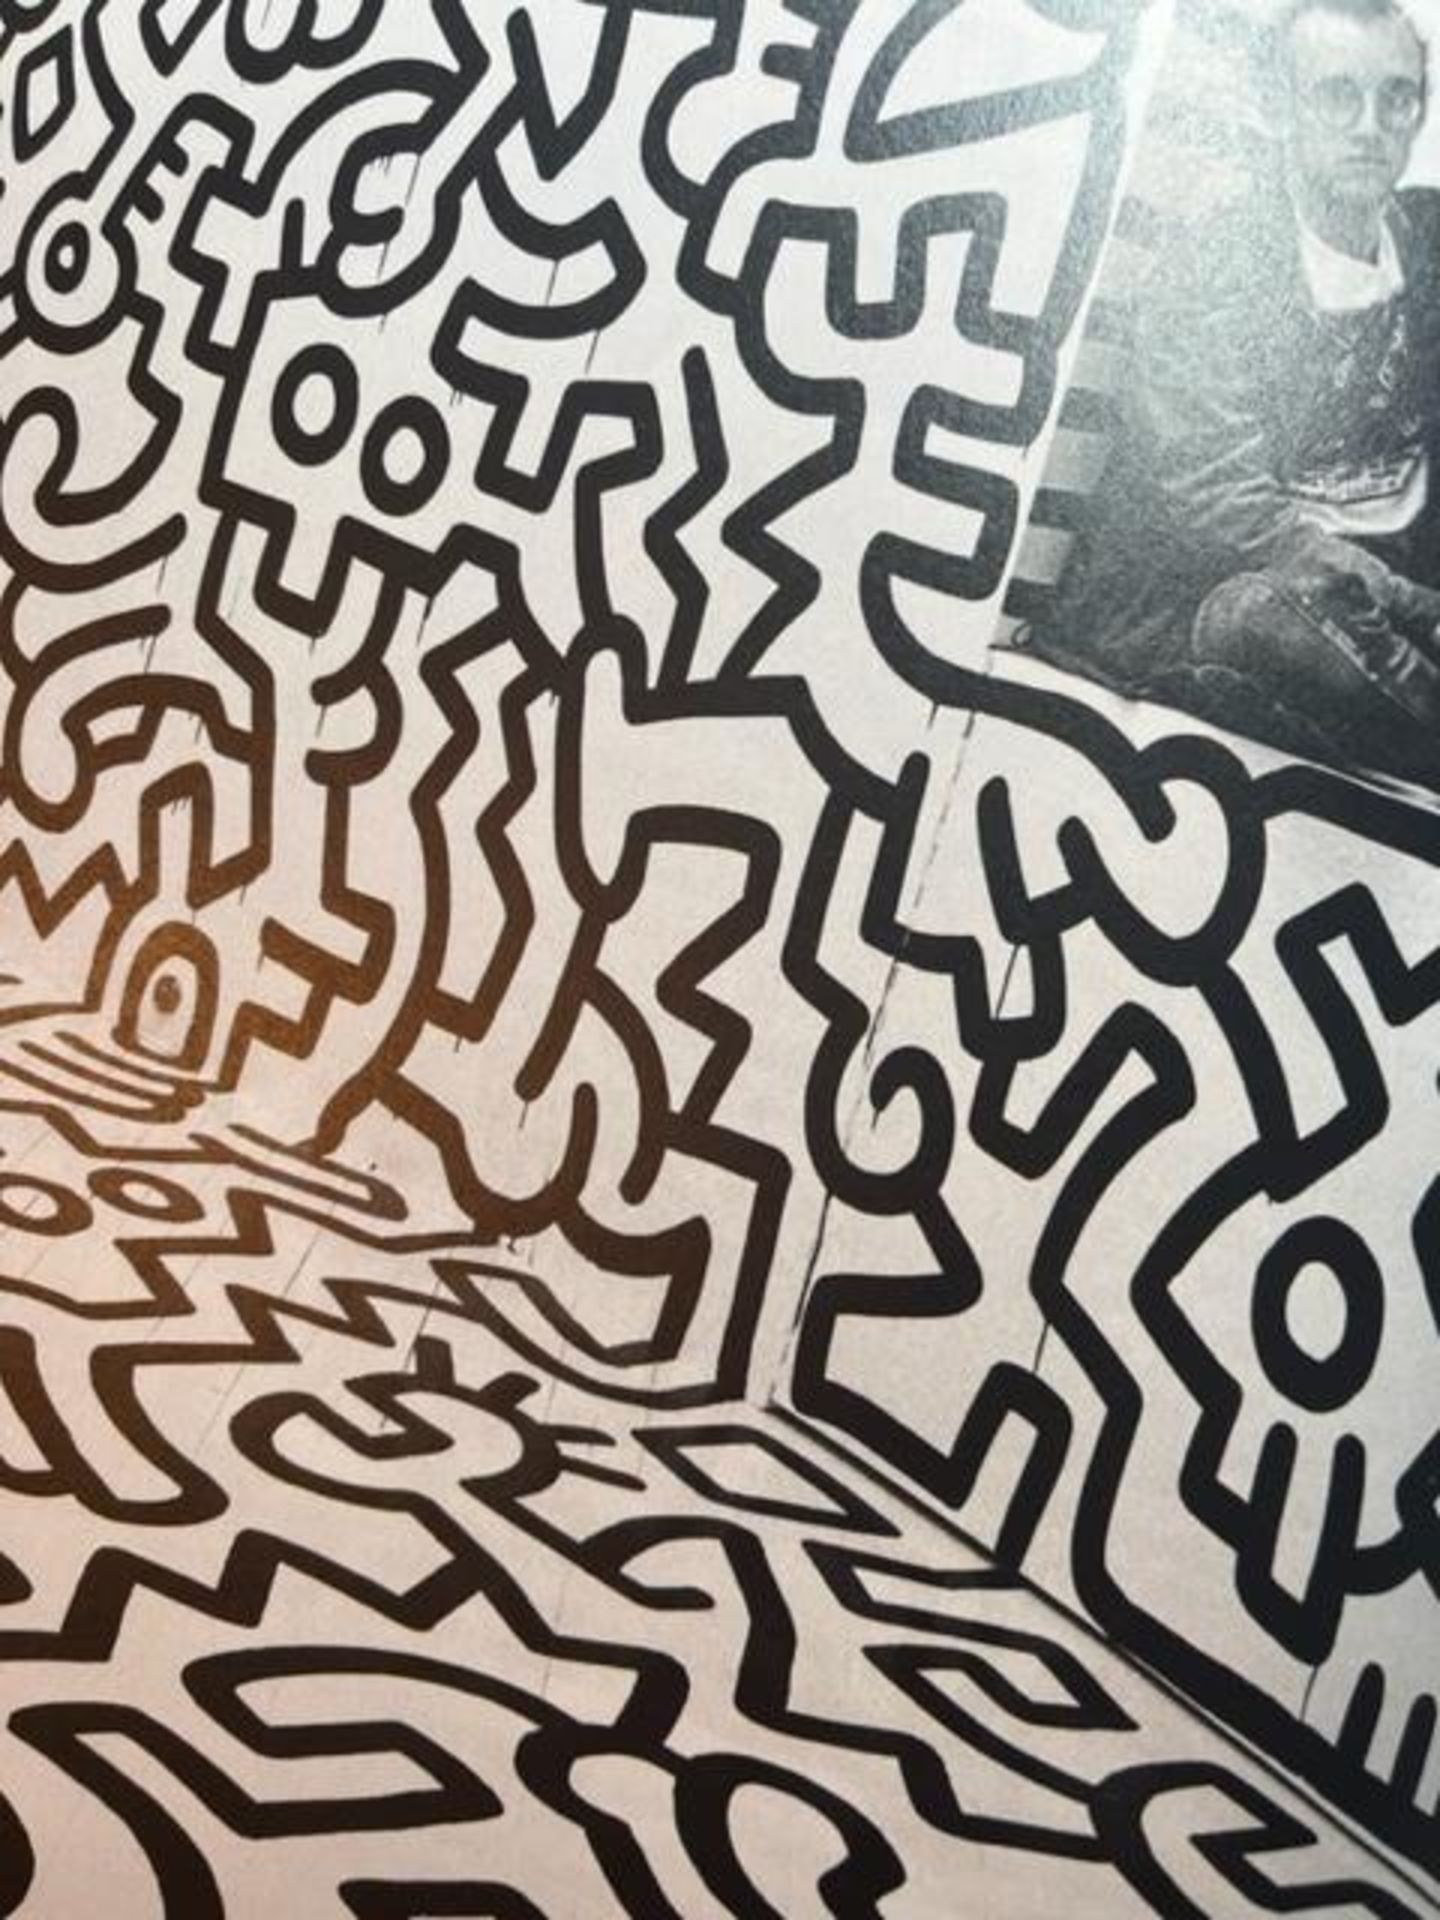 Keith Haring "Pop Shop" Print. - Bild 6 aus 6